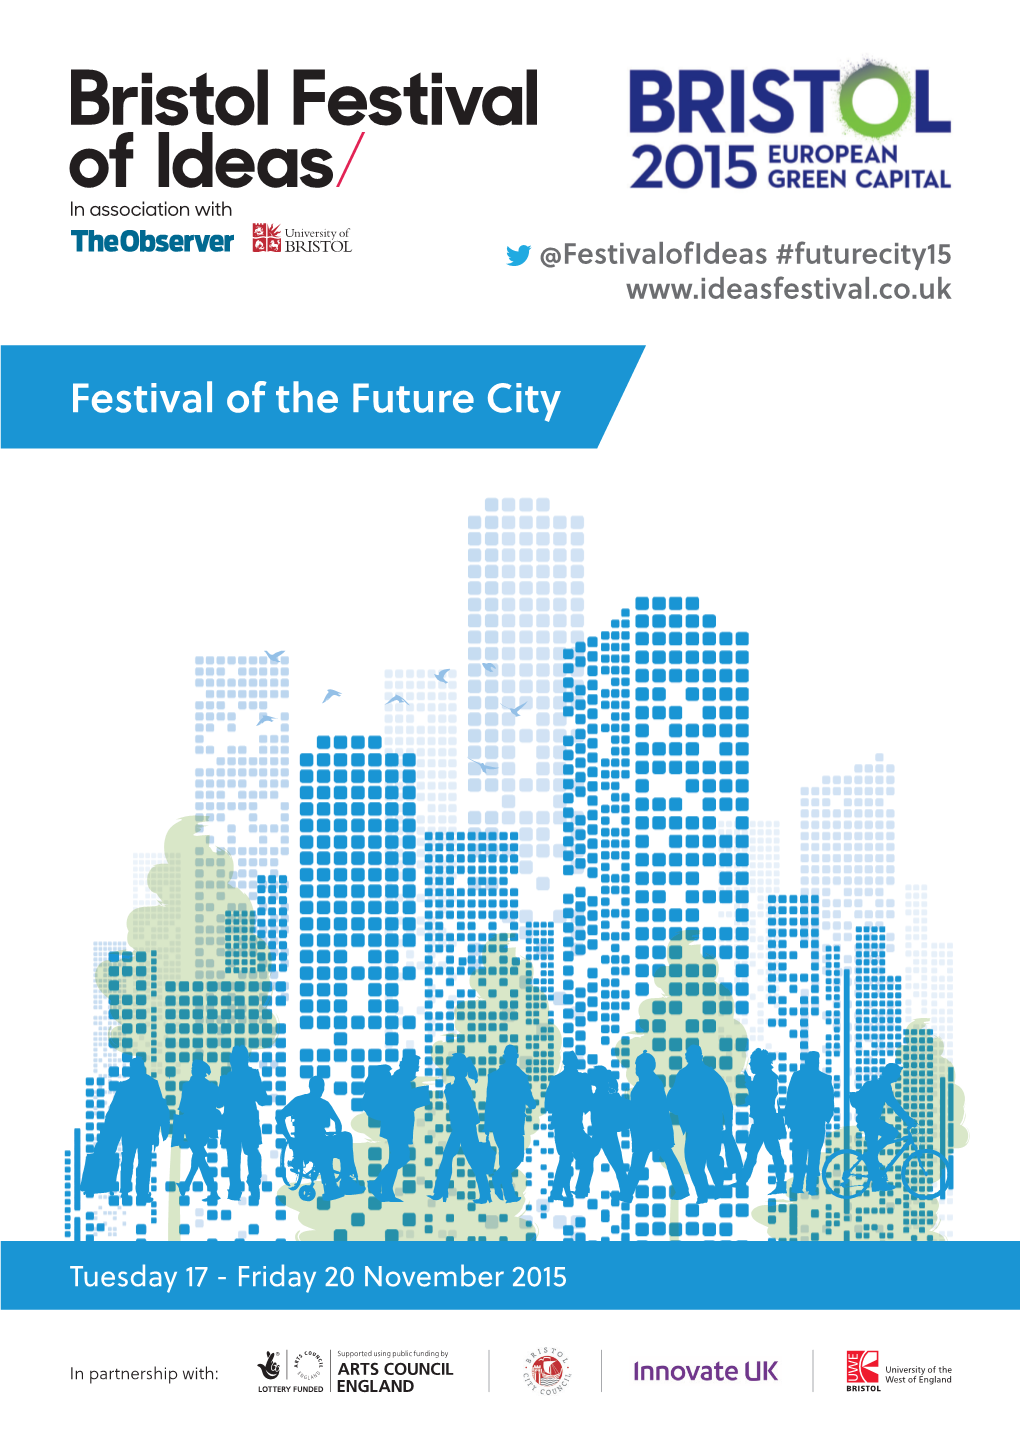 Festival of the Future City